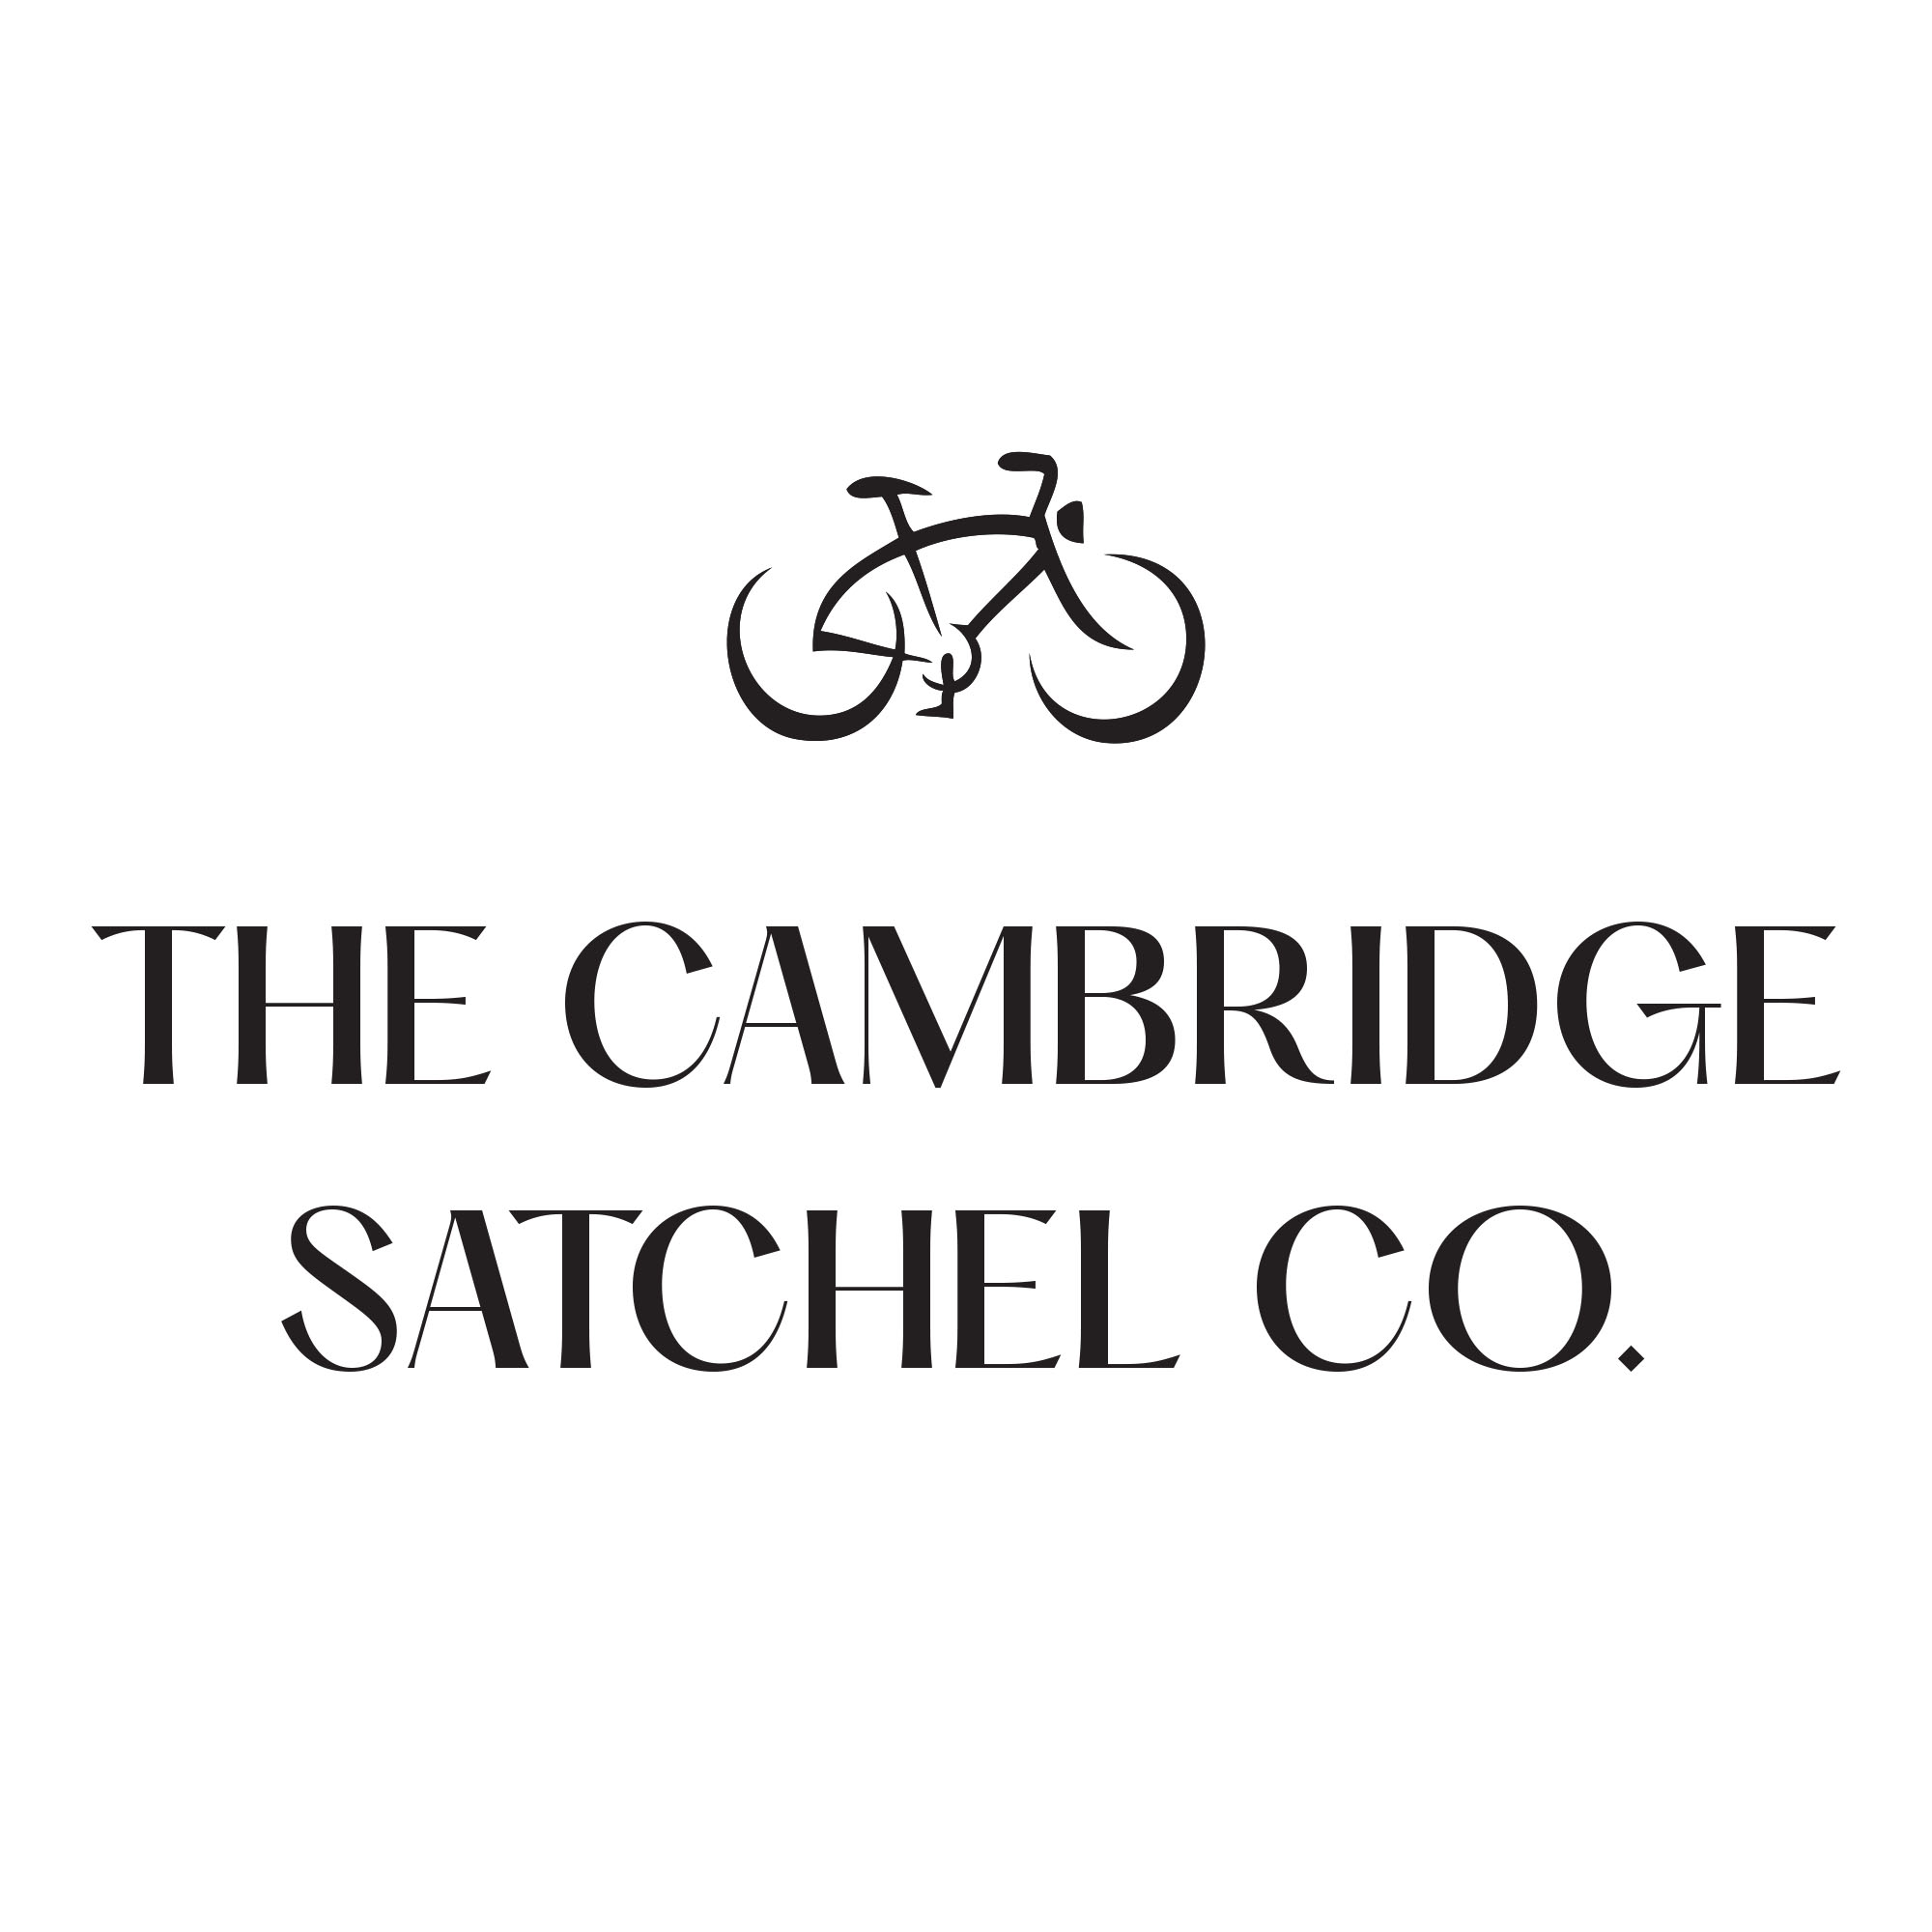 黑五折扣延长！集颜值与时尚一体的Cambridge Satchel剑桥包官网低至7折！过时不候！还不快冲！